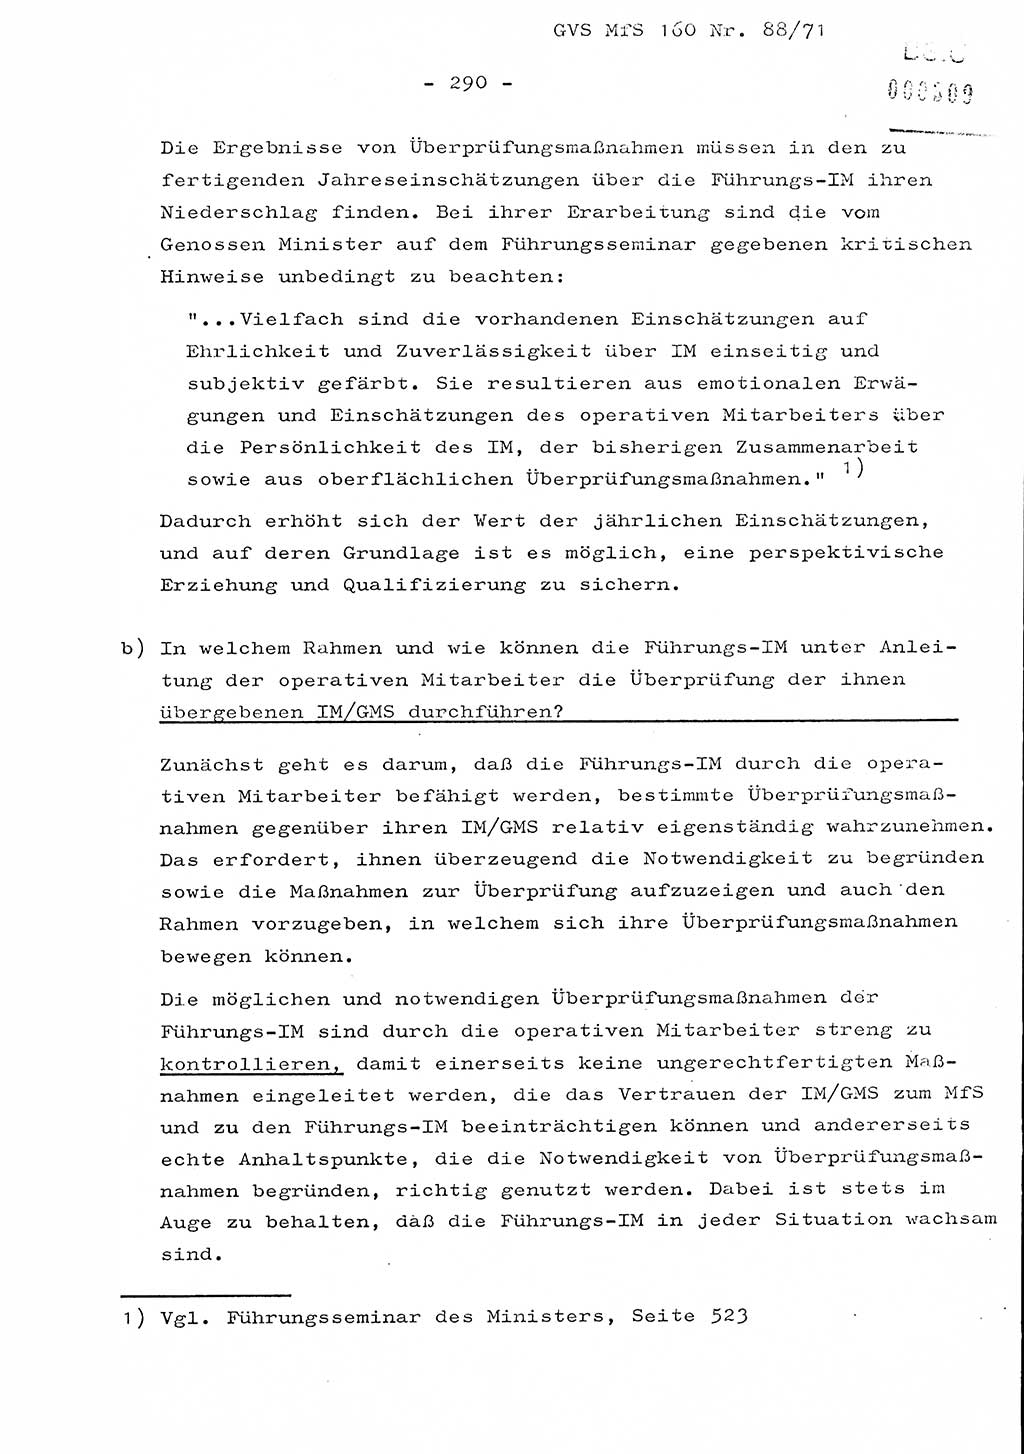 Dissertation Oberstleutnant Josef Schwarz (BV Schwerin), Major Fritz Amm (JHS), Hauptmann Peter Gräßler (JHS), Ministerium für Staatssicherheit (MfS) [Deutsche Demokratische Republik (DDR)], Juristische Hochschule (JHS), Geheime Verschlußsache (GVS) 160-88/71, Potsdam 1972, Seite 290 (Diss. MfS DDR JHS GVS 160-88/71 1972, S. 290)